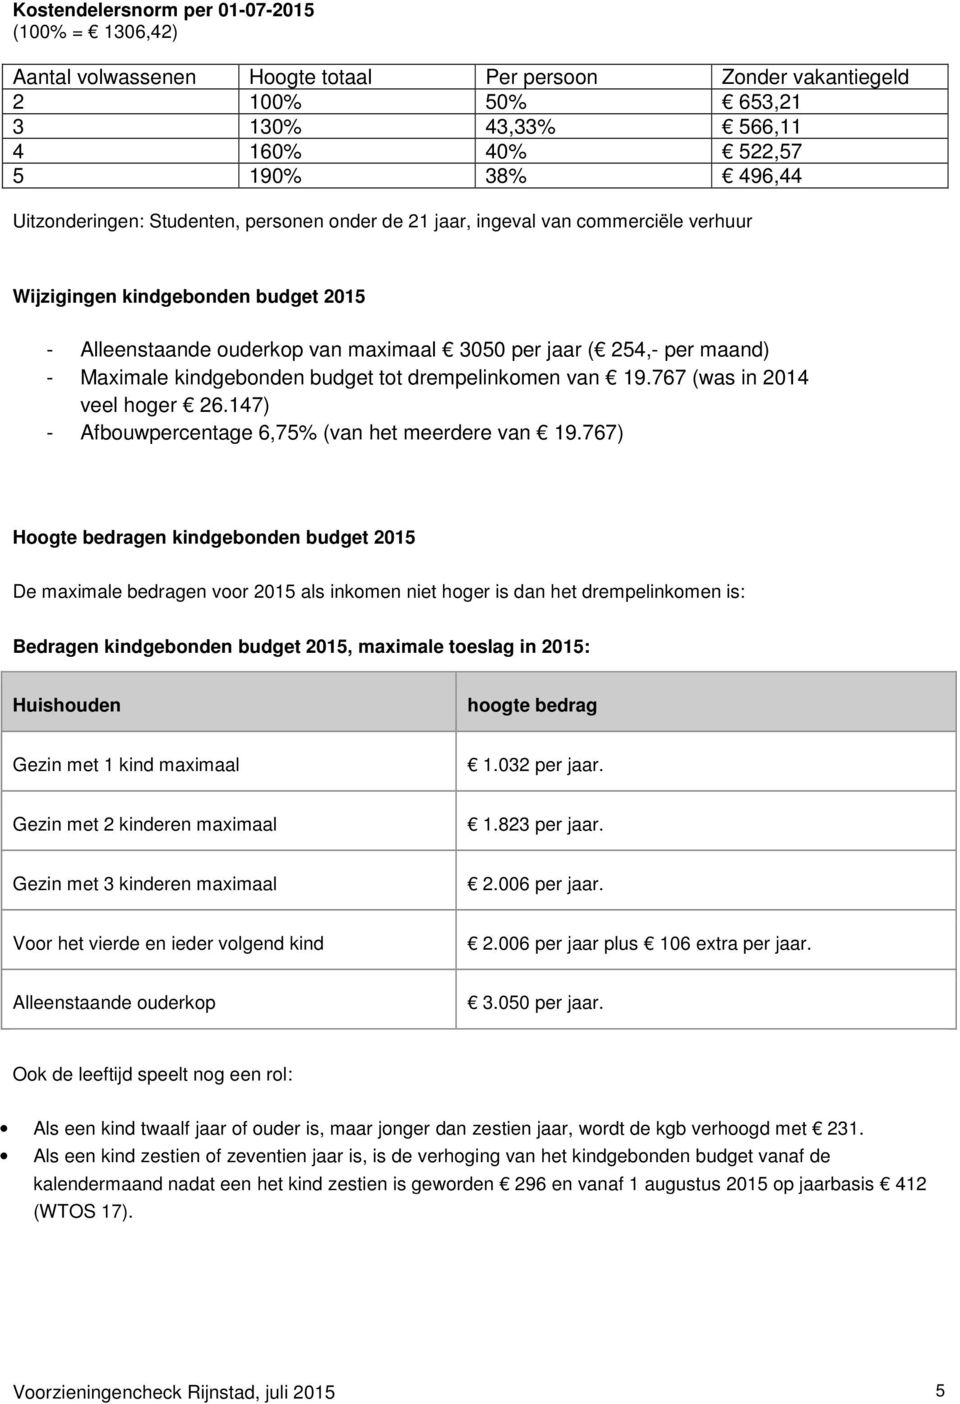 Maximale kindgebonden budget tot drempelinkomen van 19.767 (was in 2014 veel hoger 26.147) - Afbouwpercentage 6,75% (van het meerdere van 19.